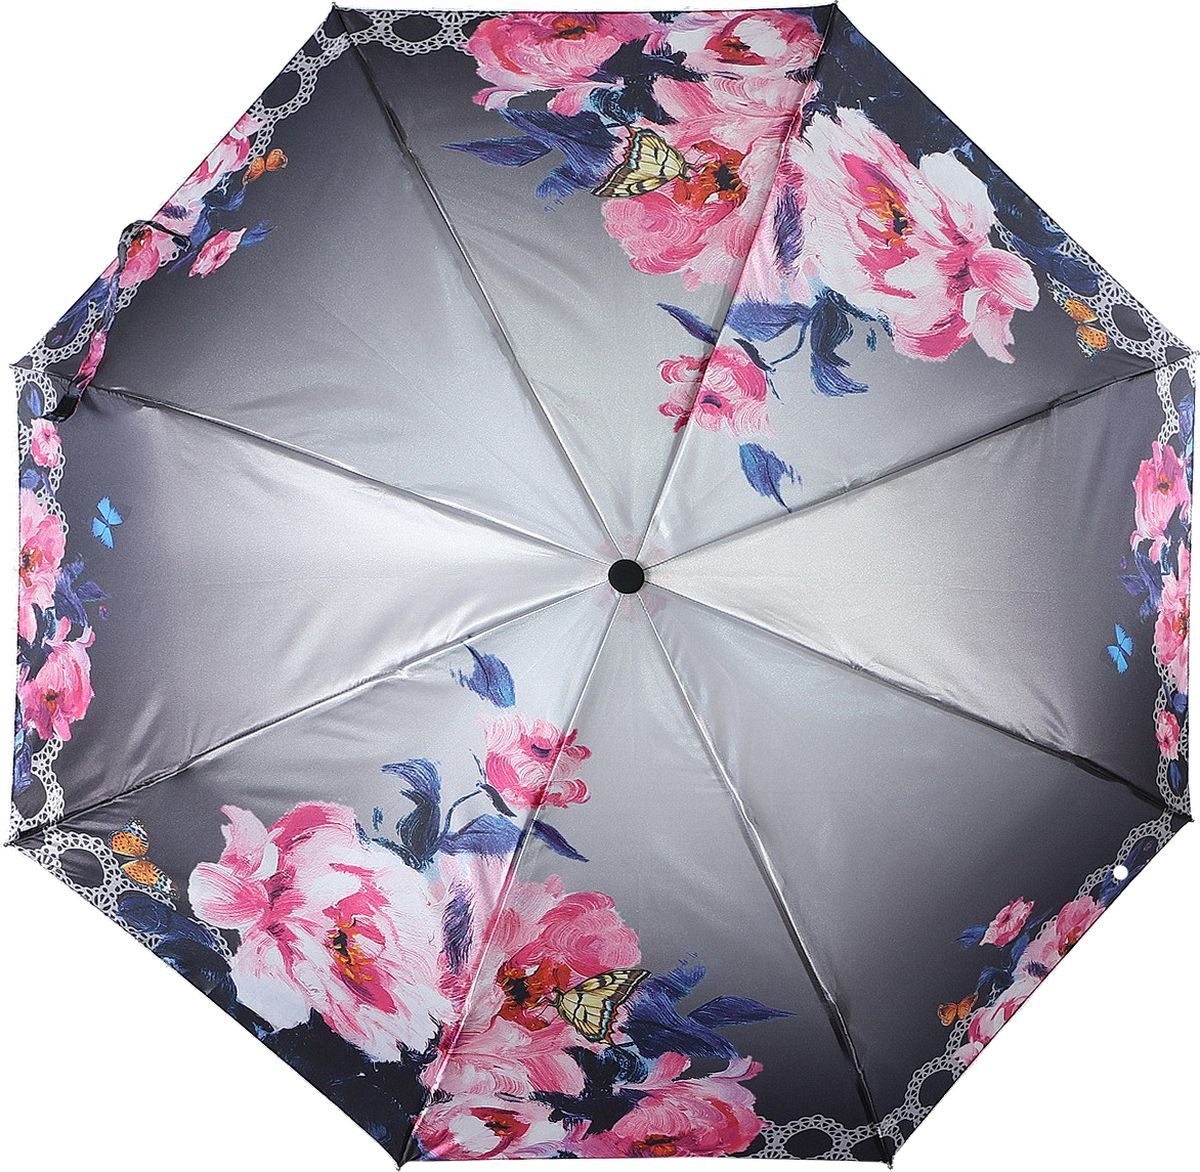 Зонт женский Magic Rain, автомат, 3 сложения, цвет: серый, розовый, голубой. 7337-1623